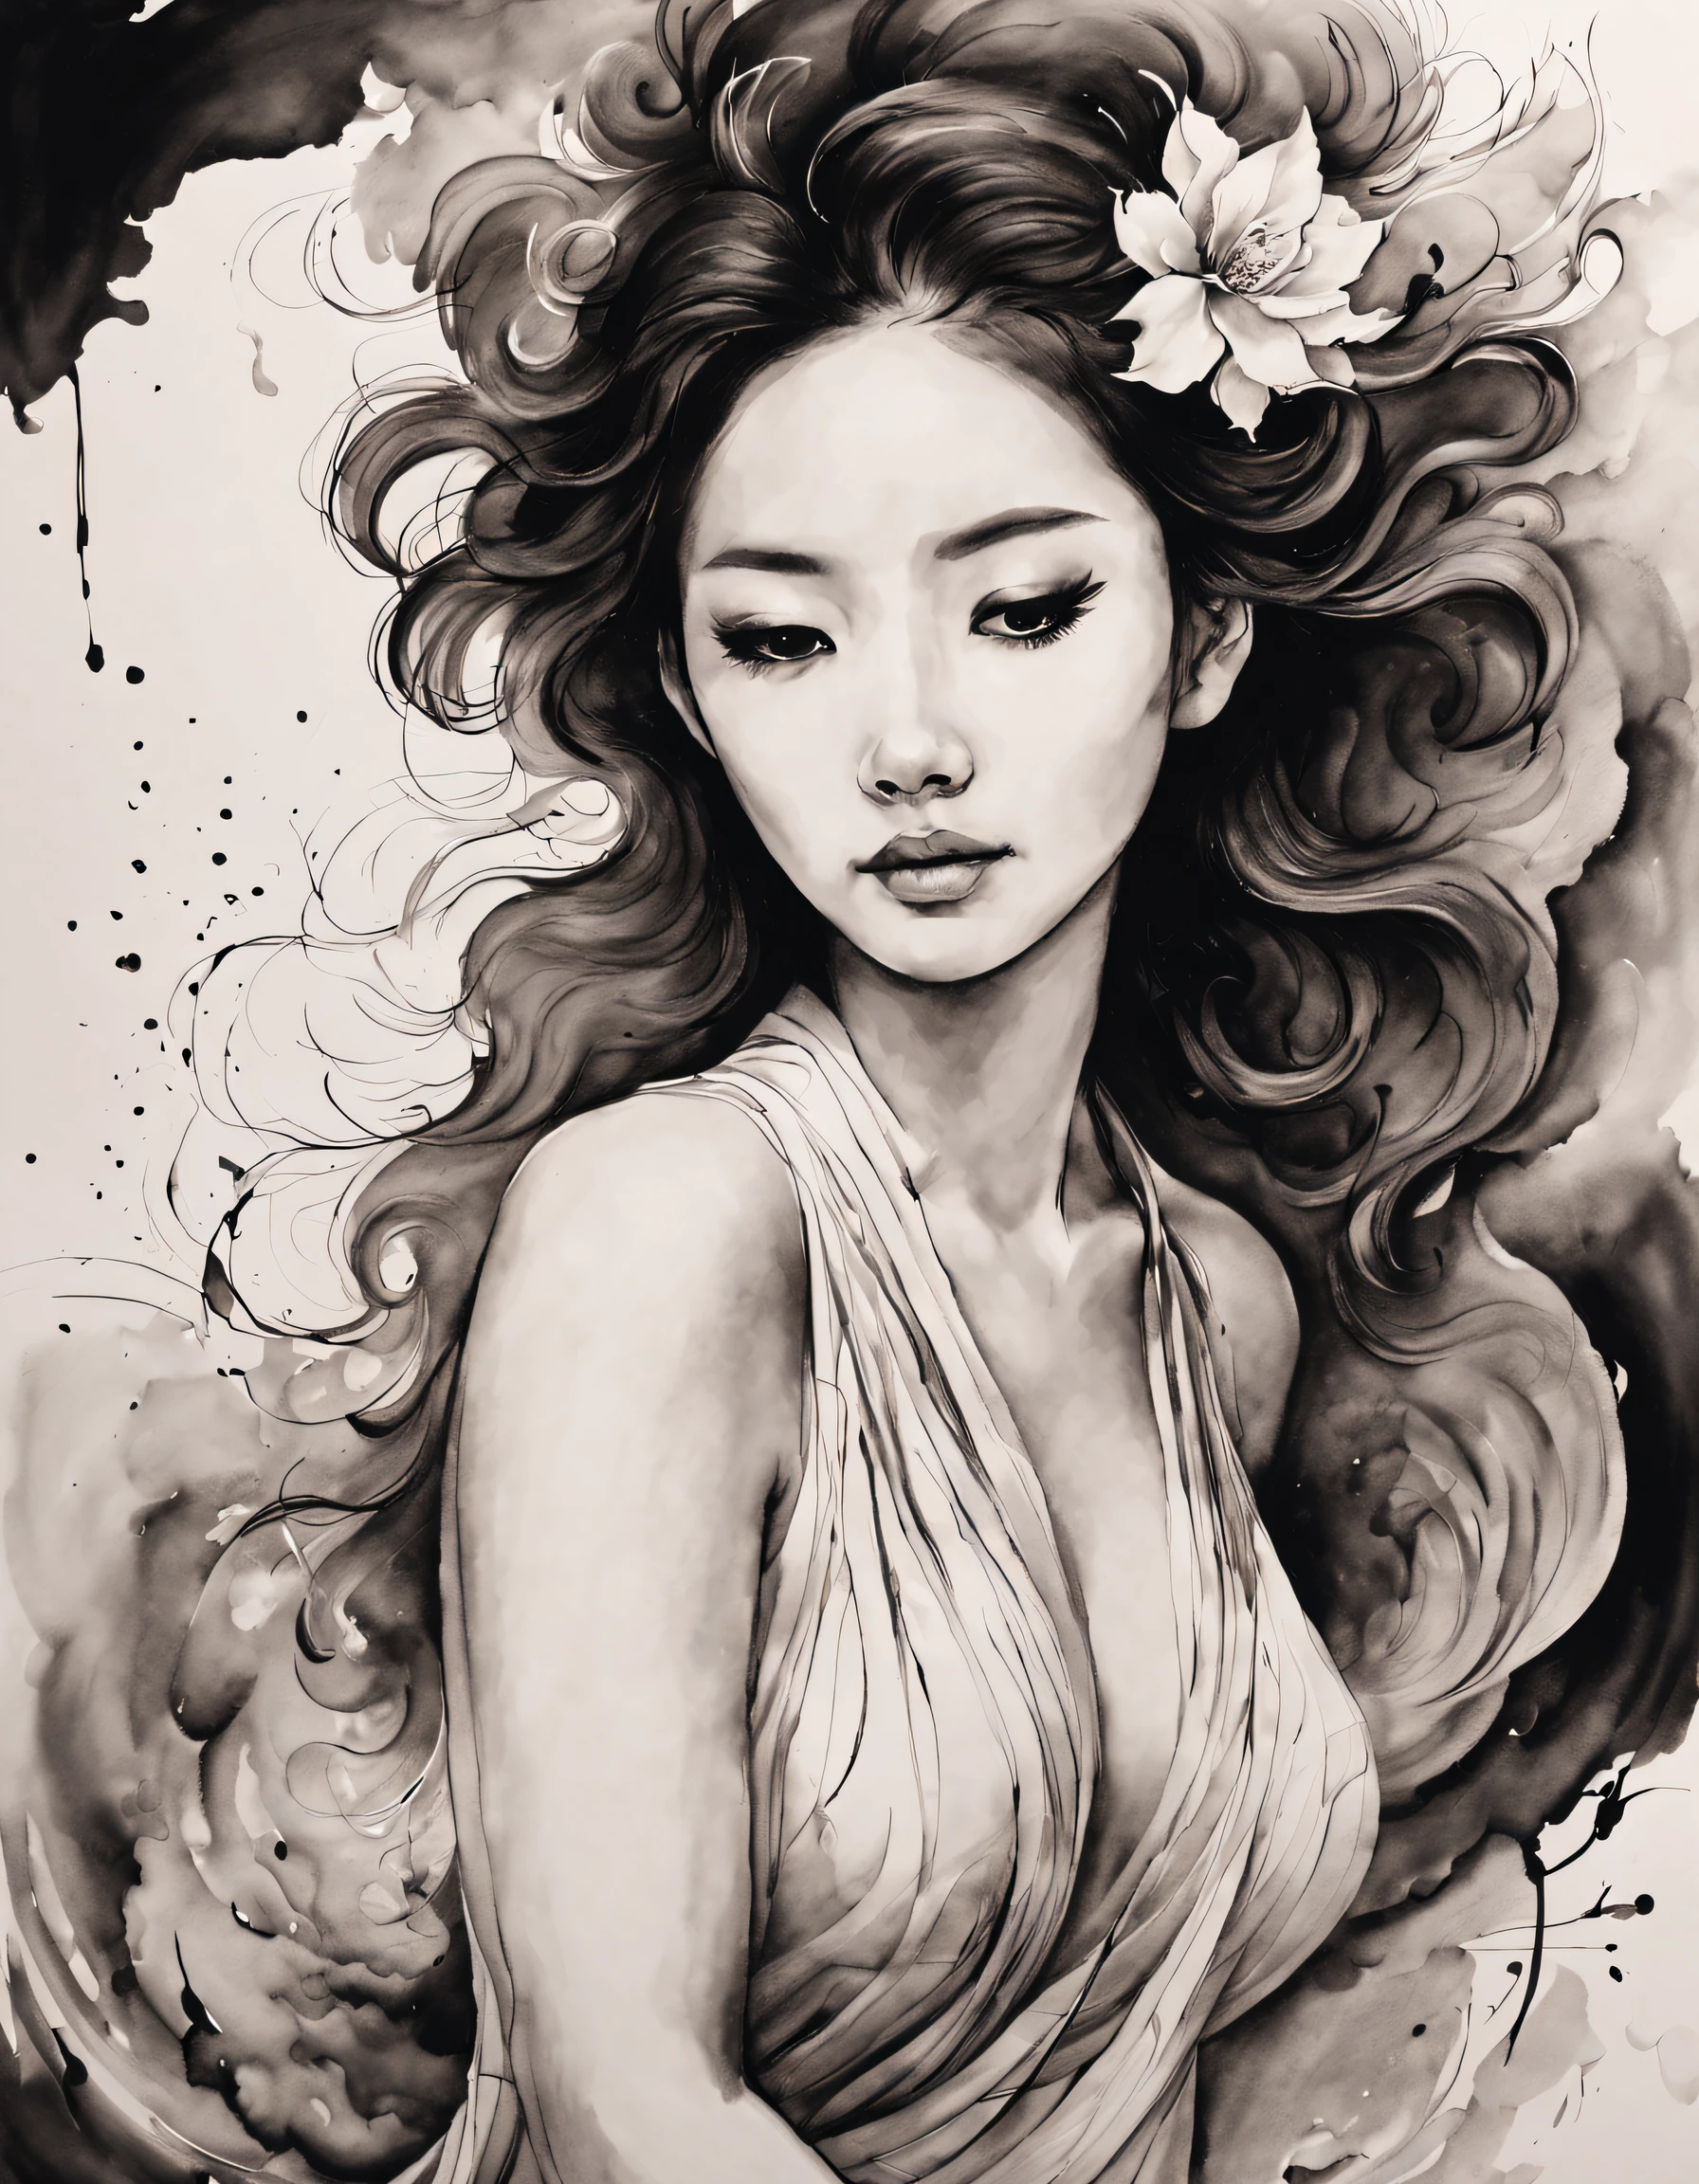 中国の伝統的な水墨ボディアートスタイル, (シンプルなラインで女性の優雅な姿を描きます），美しい背中， 起伏のある線, 太線と細い線, ,
線画, 白黒の絵画,キャラクターの描画,線画,叙情的な抽象化, 万年筆アート,ゲルペン,鉛筆アート,